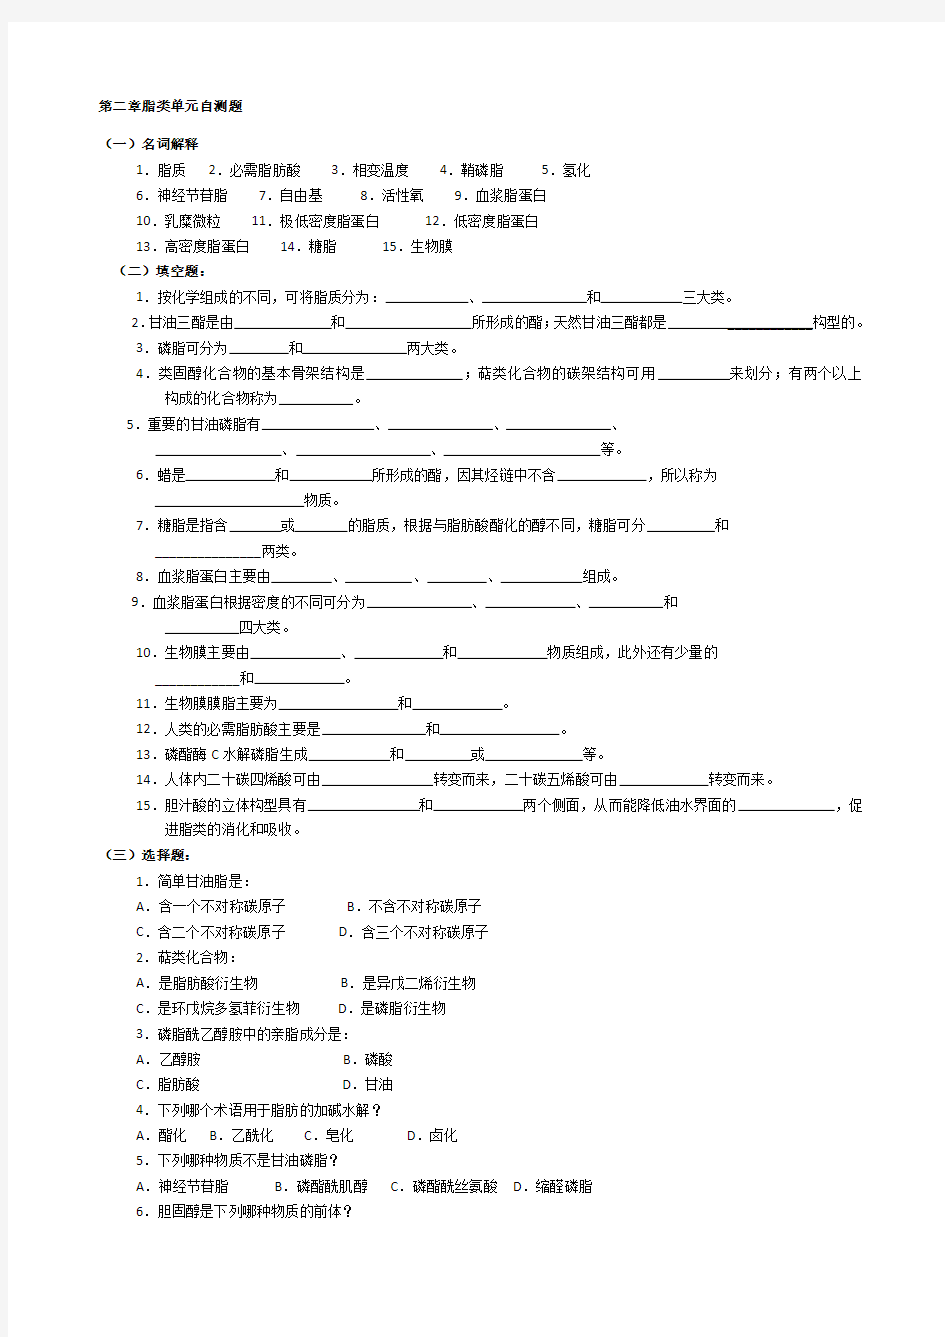 华中农业大学生物化学本科试题库第2章脂质